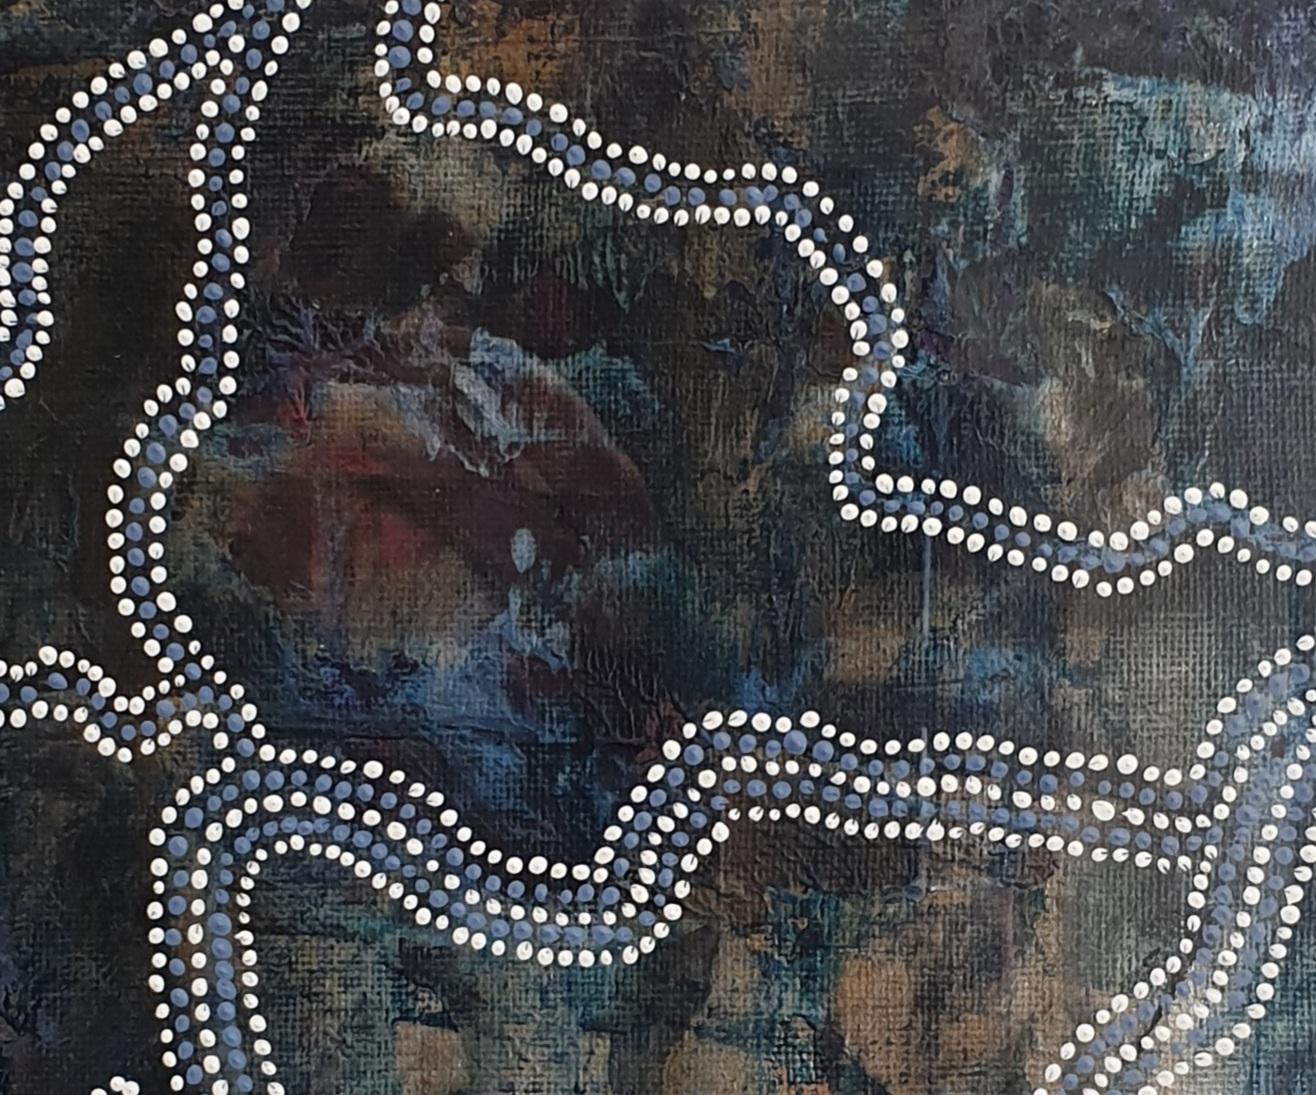 Zeitgenössisches, von den Aborigines inspiriertes, abstraktes Bild von Menno Modderman, einem niederländischen Künstler, der in Südfrankreich malt, signiert und datiert unten auf dem Passepartout.

Menno, der seit mehreren Jahren als Künstler in